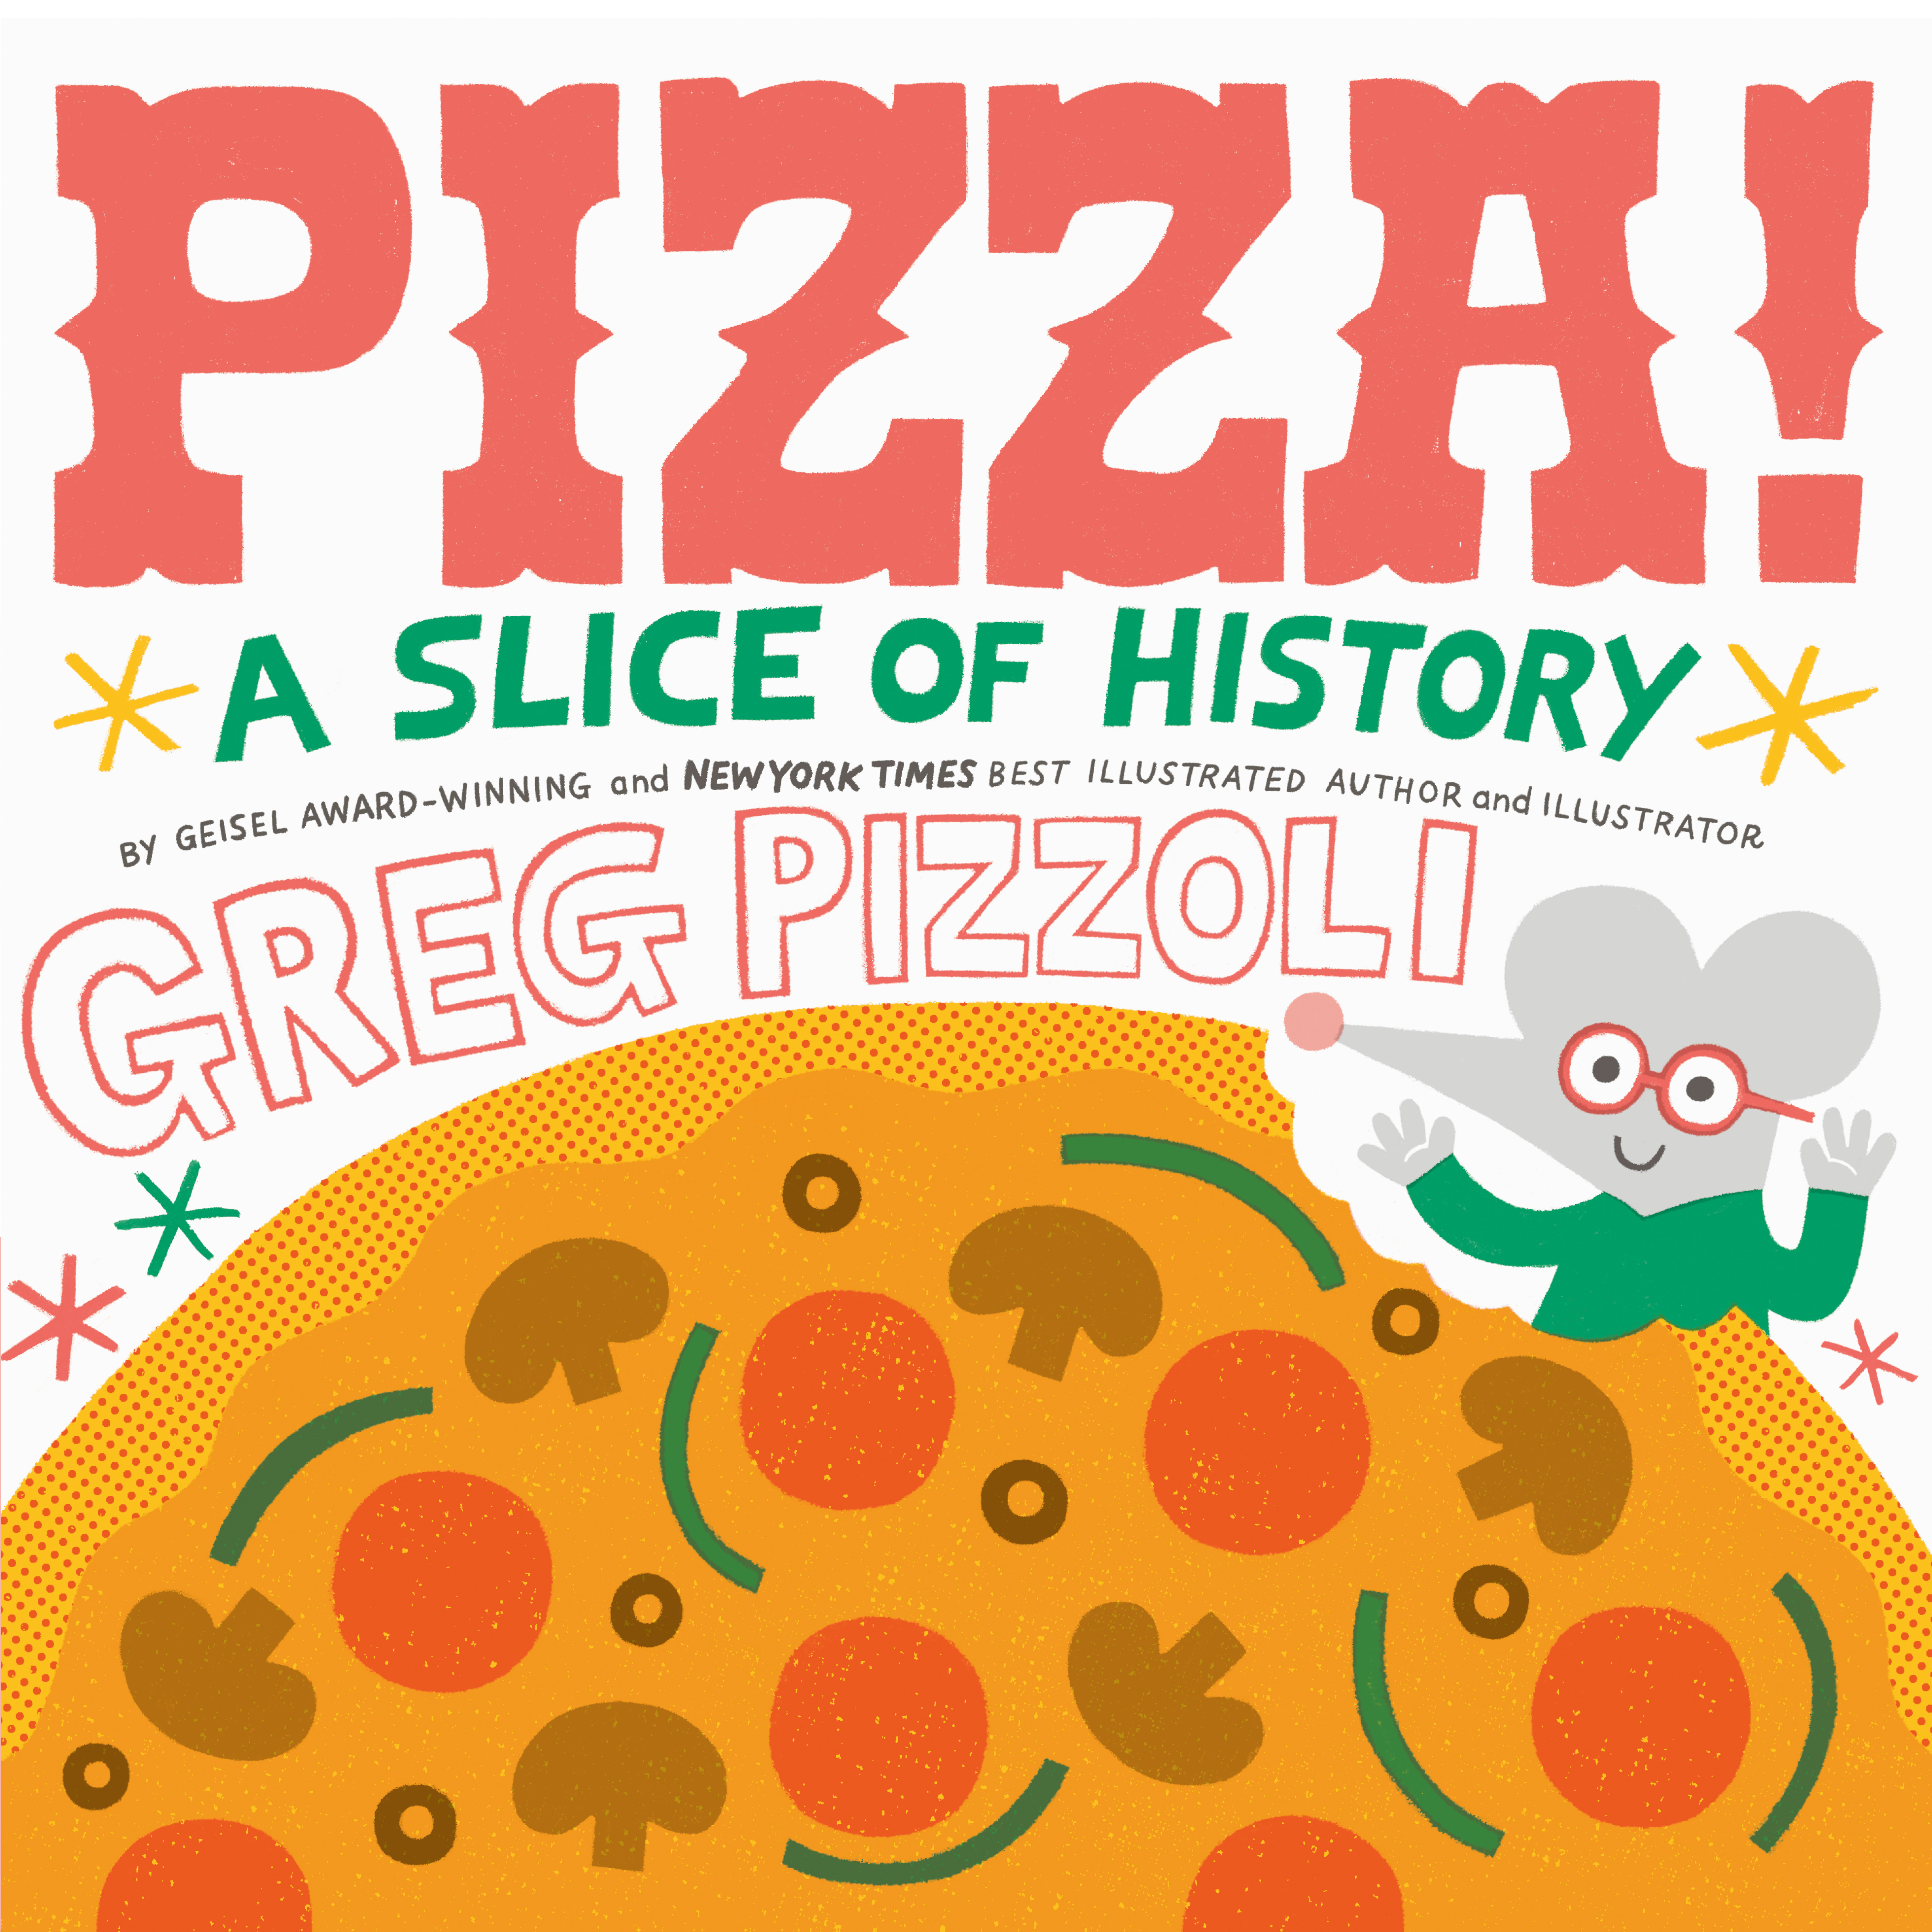 Pizza! : A Slice of History | Picture & board books